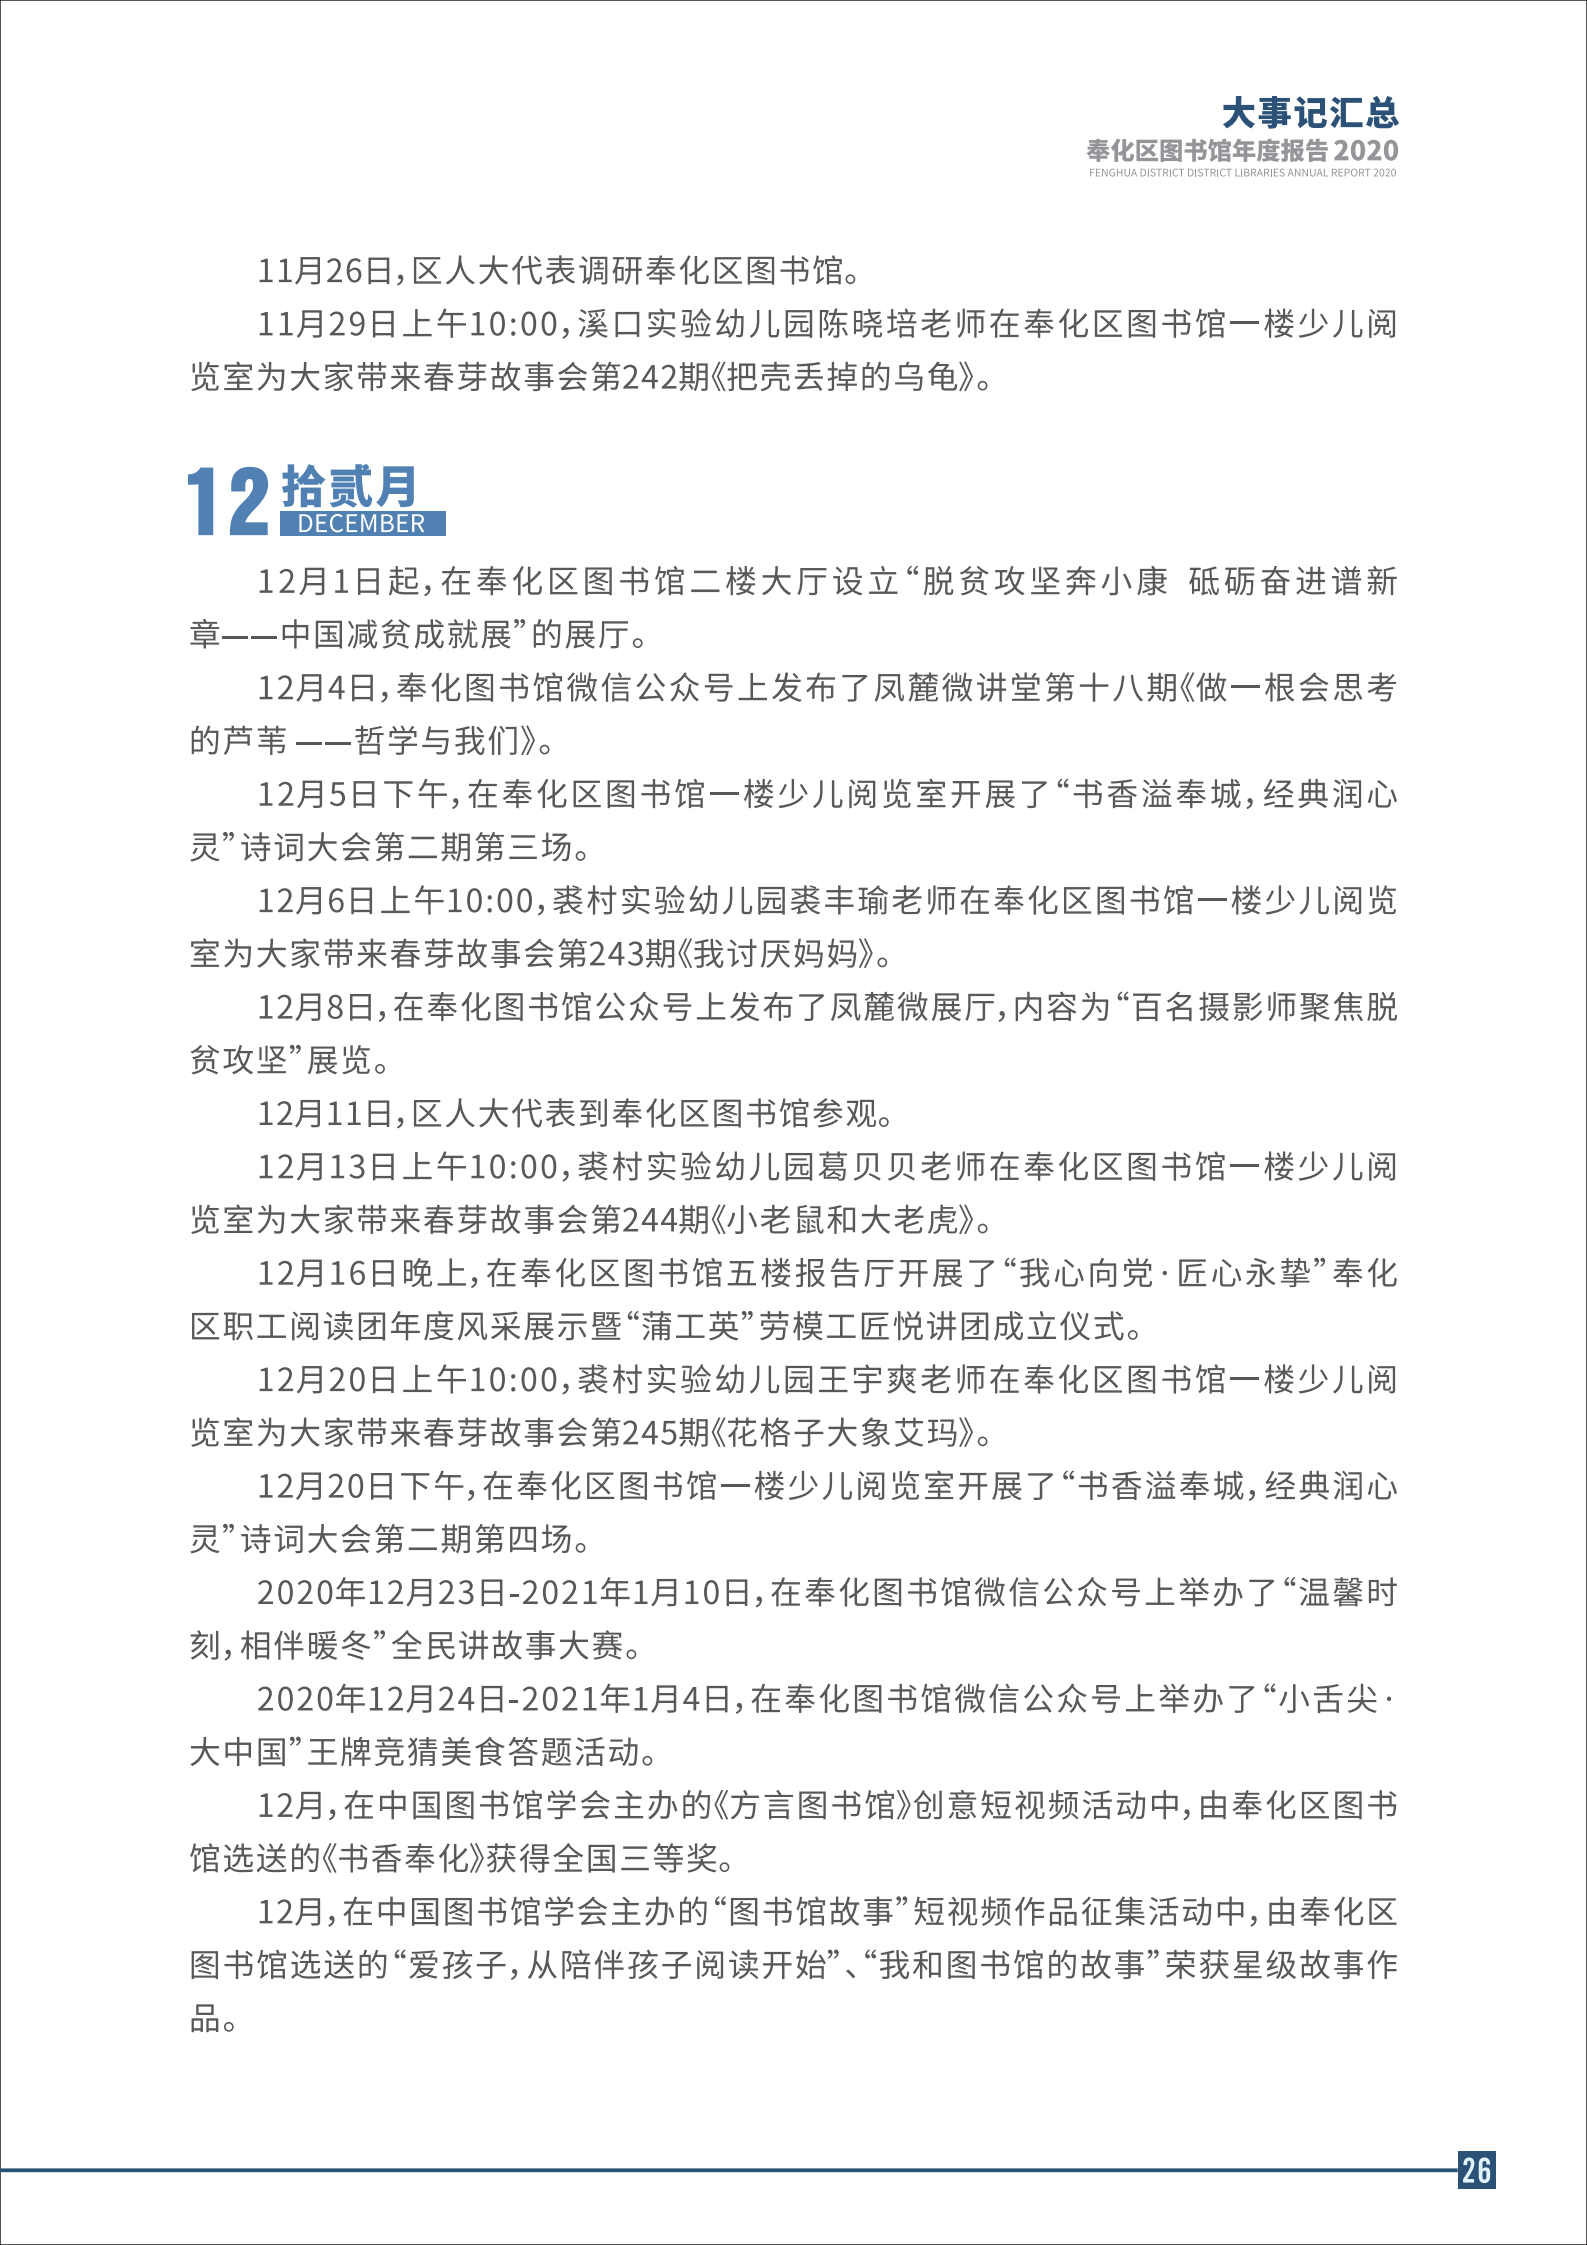 宁波市奉化区图书馆2020年年度报告 终稿_26.png